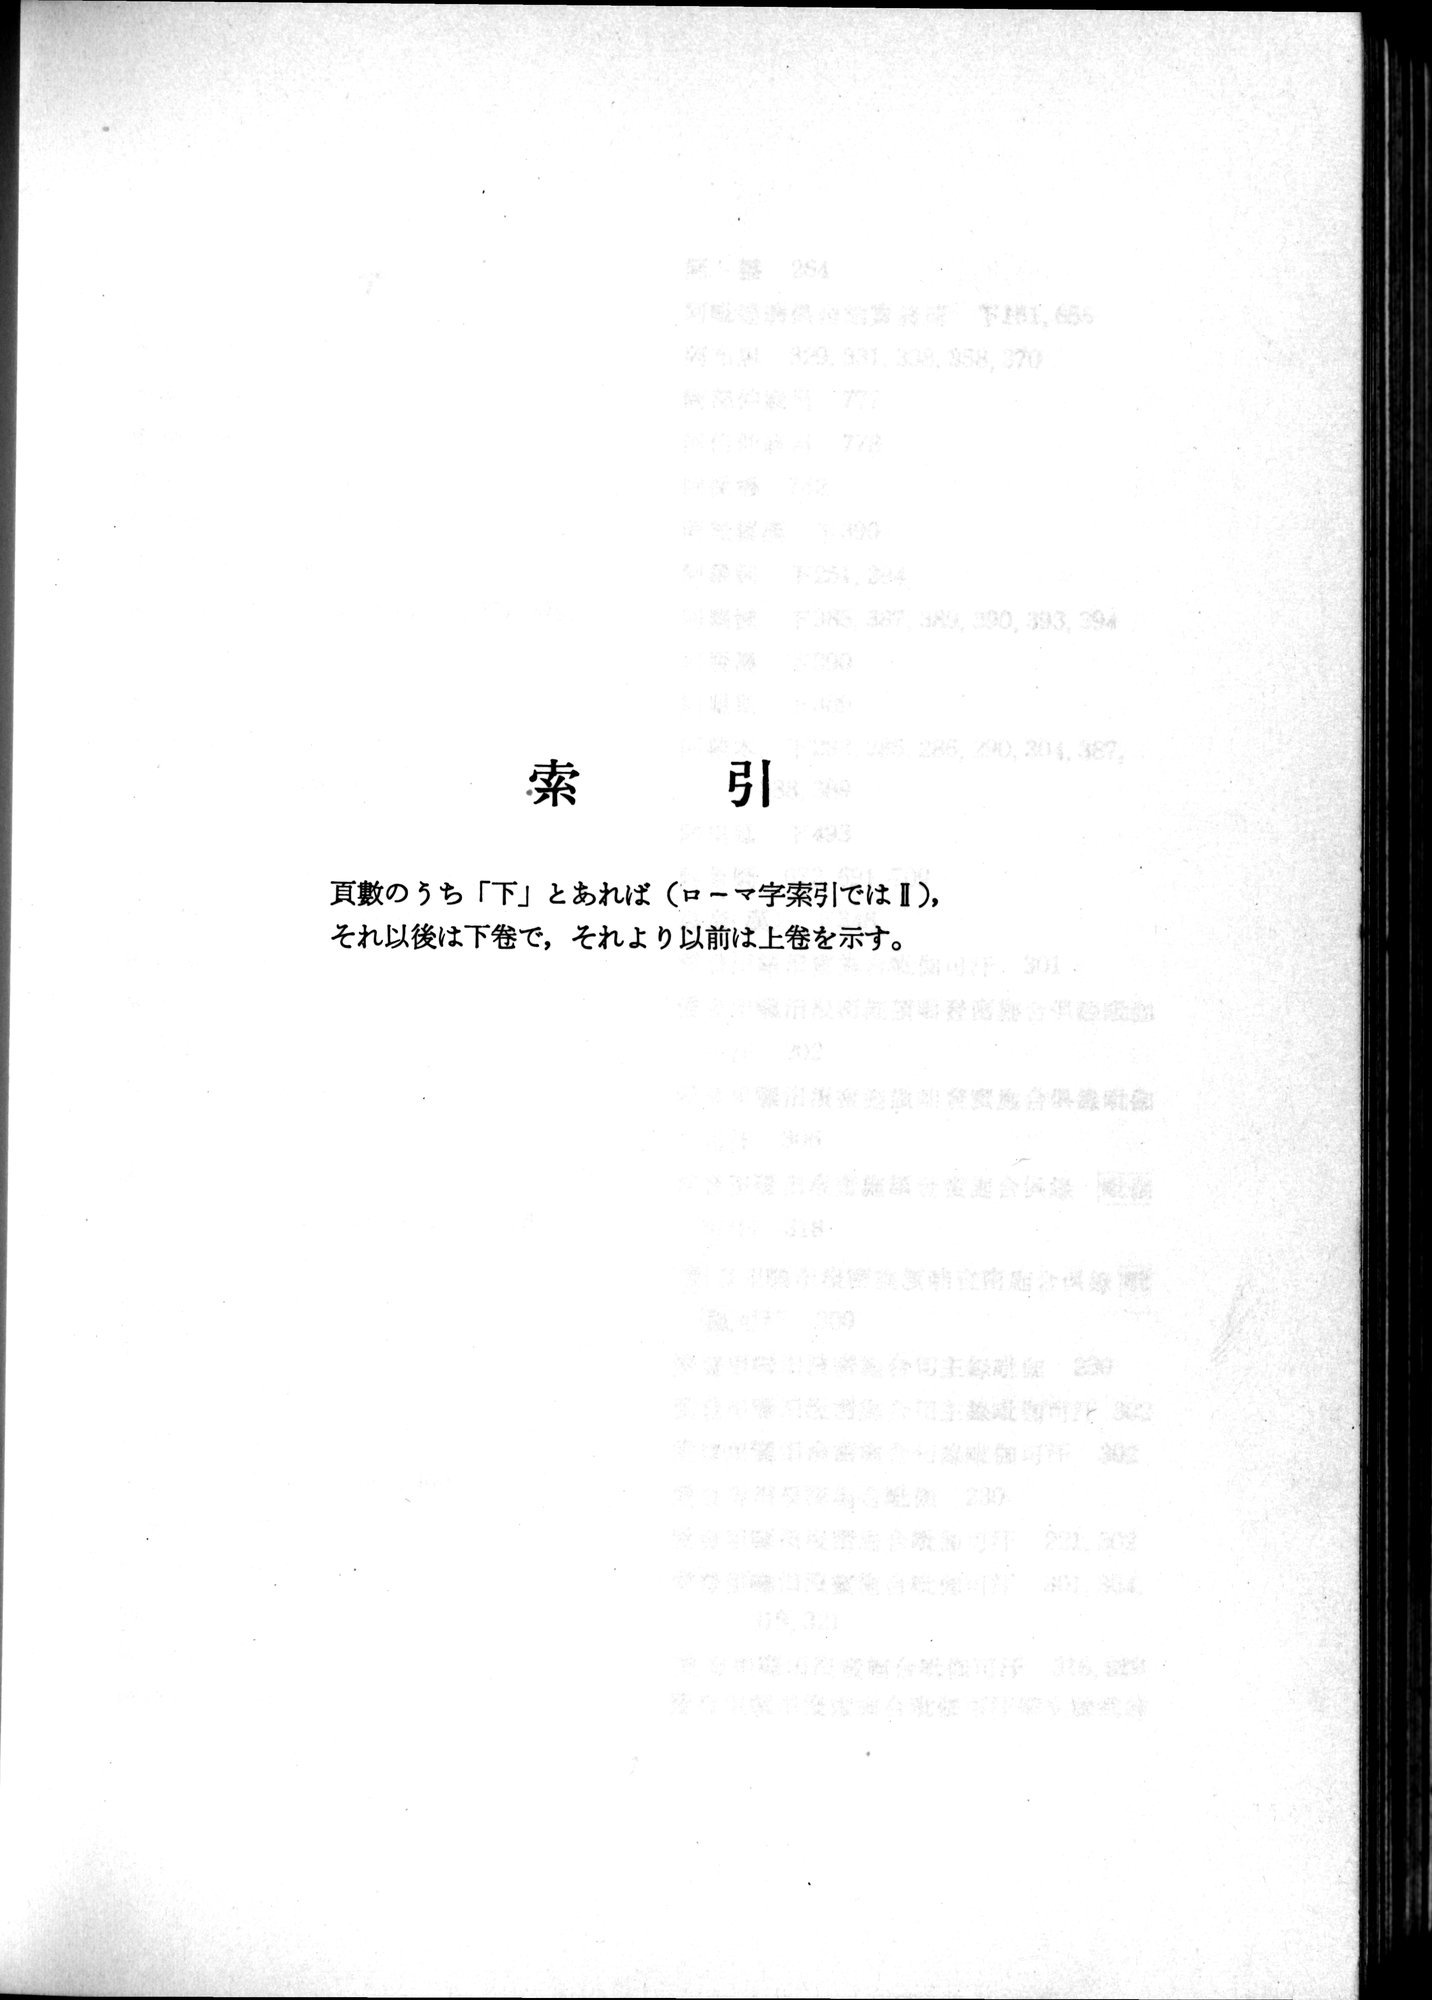 羽田博士史学論文集 : vol.2 / Page 808 (Grayscale High Resolution Image)